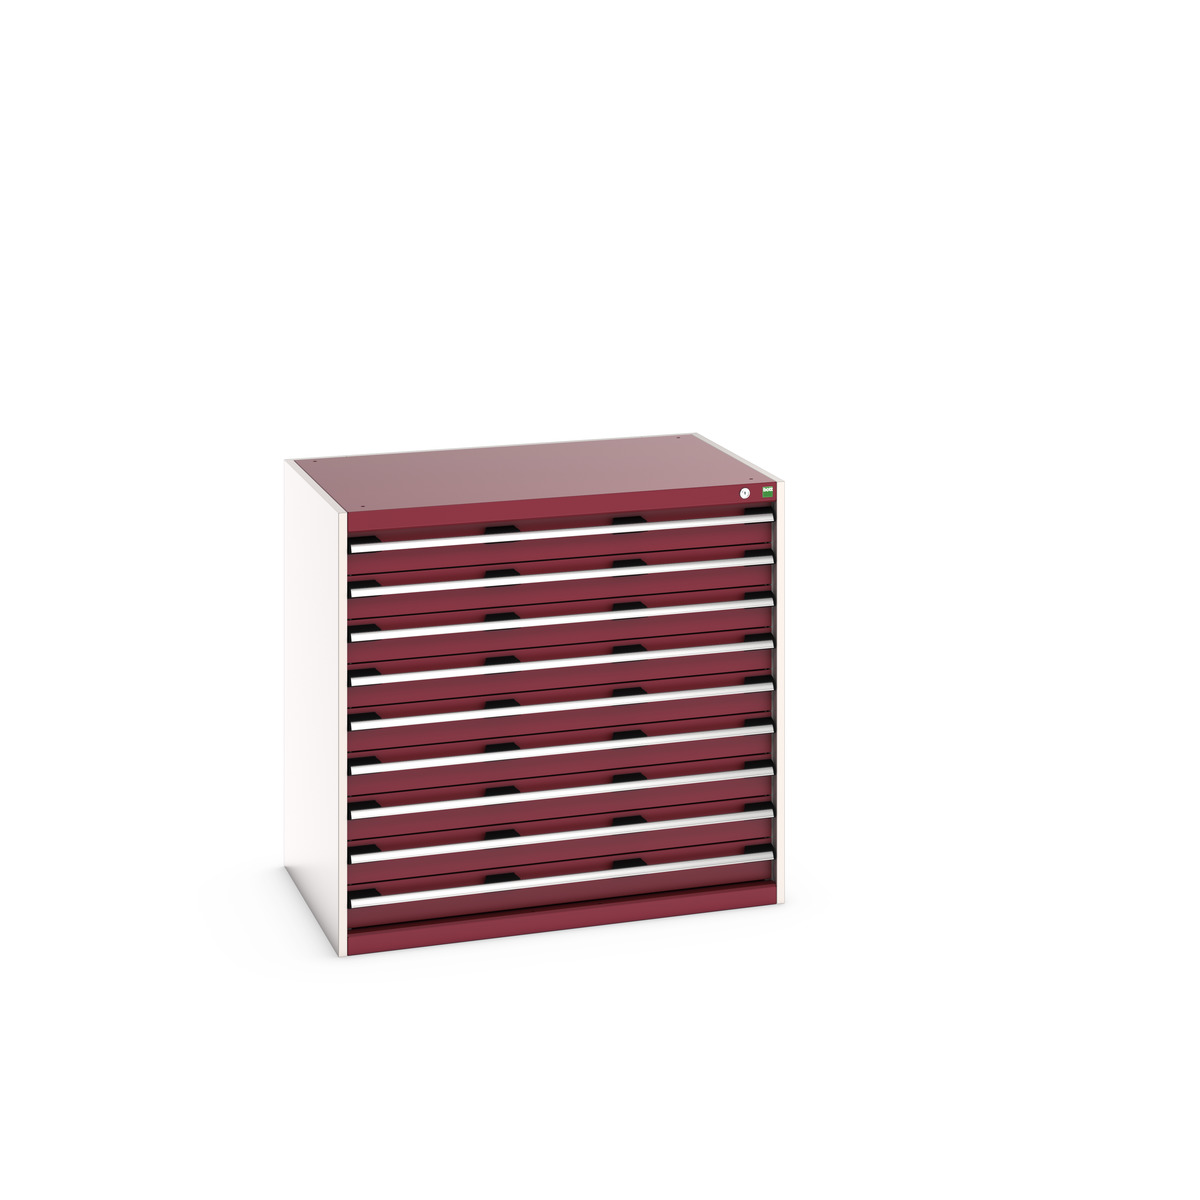 40029028.24V - cubio drawer cabinet